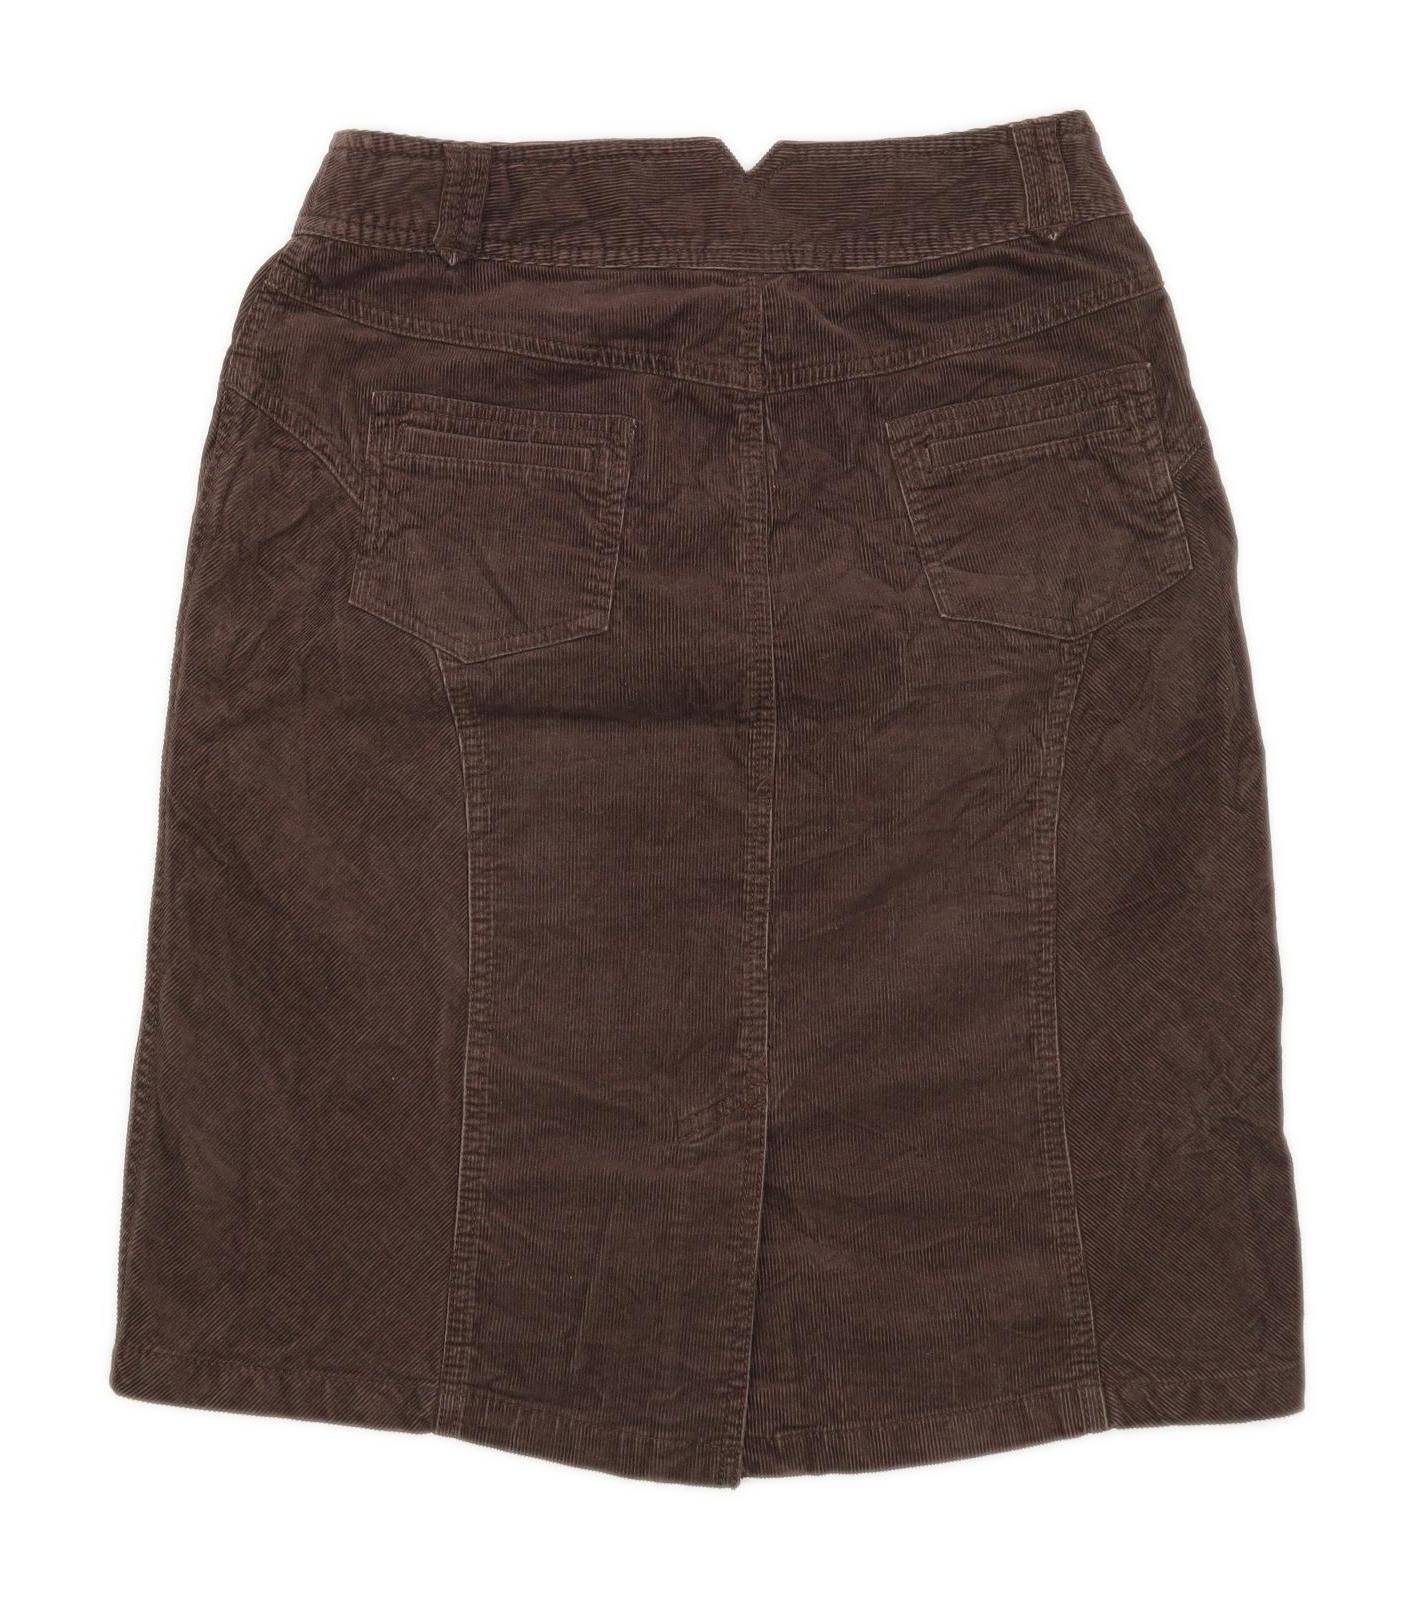 Next Womens Size 10 Corduroy Blend Brown Skirt (Regular)